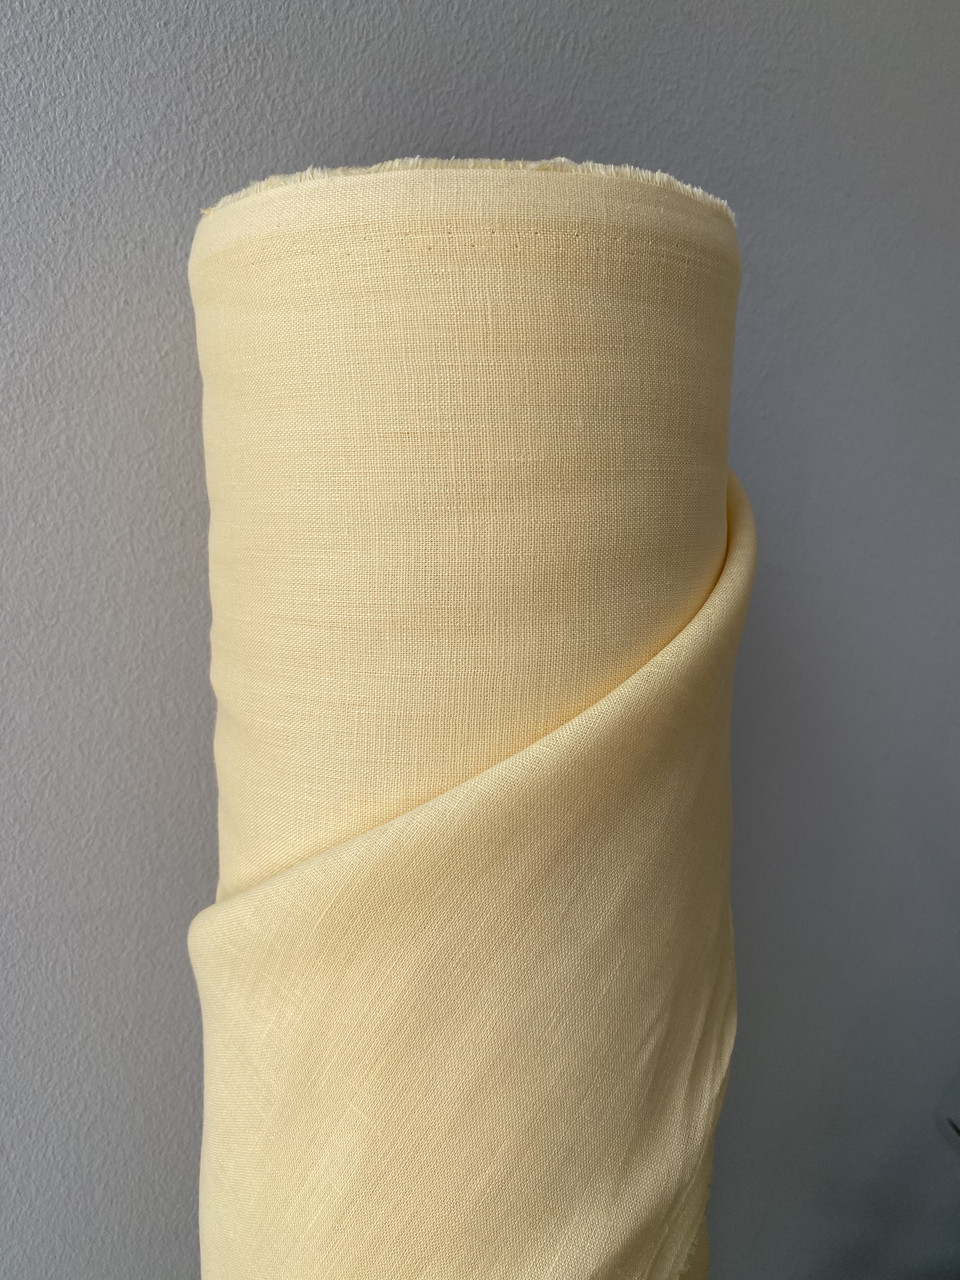 Ніжно-жовта сорочково-платтєва лляна тканина, колір 764